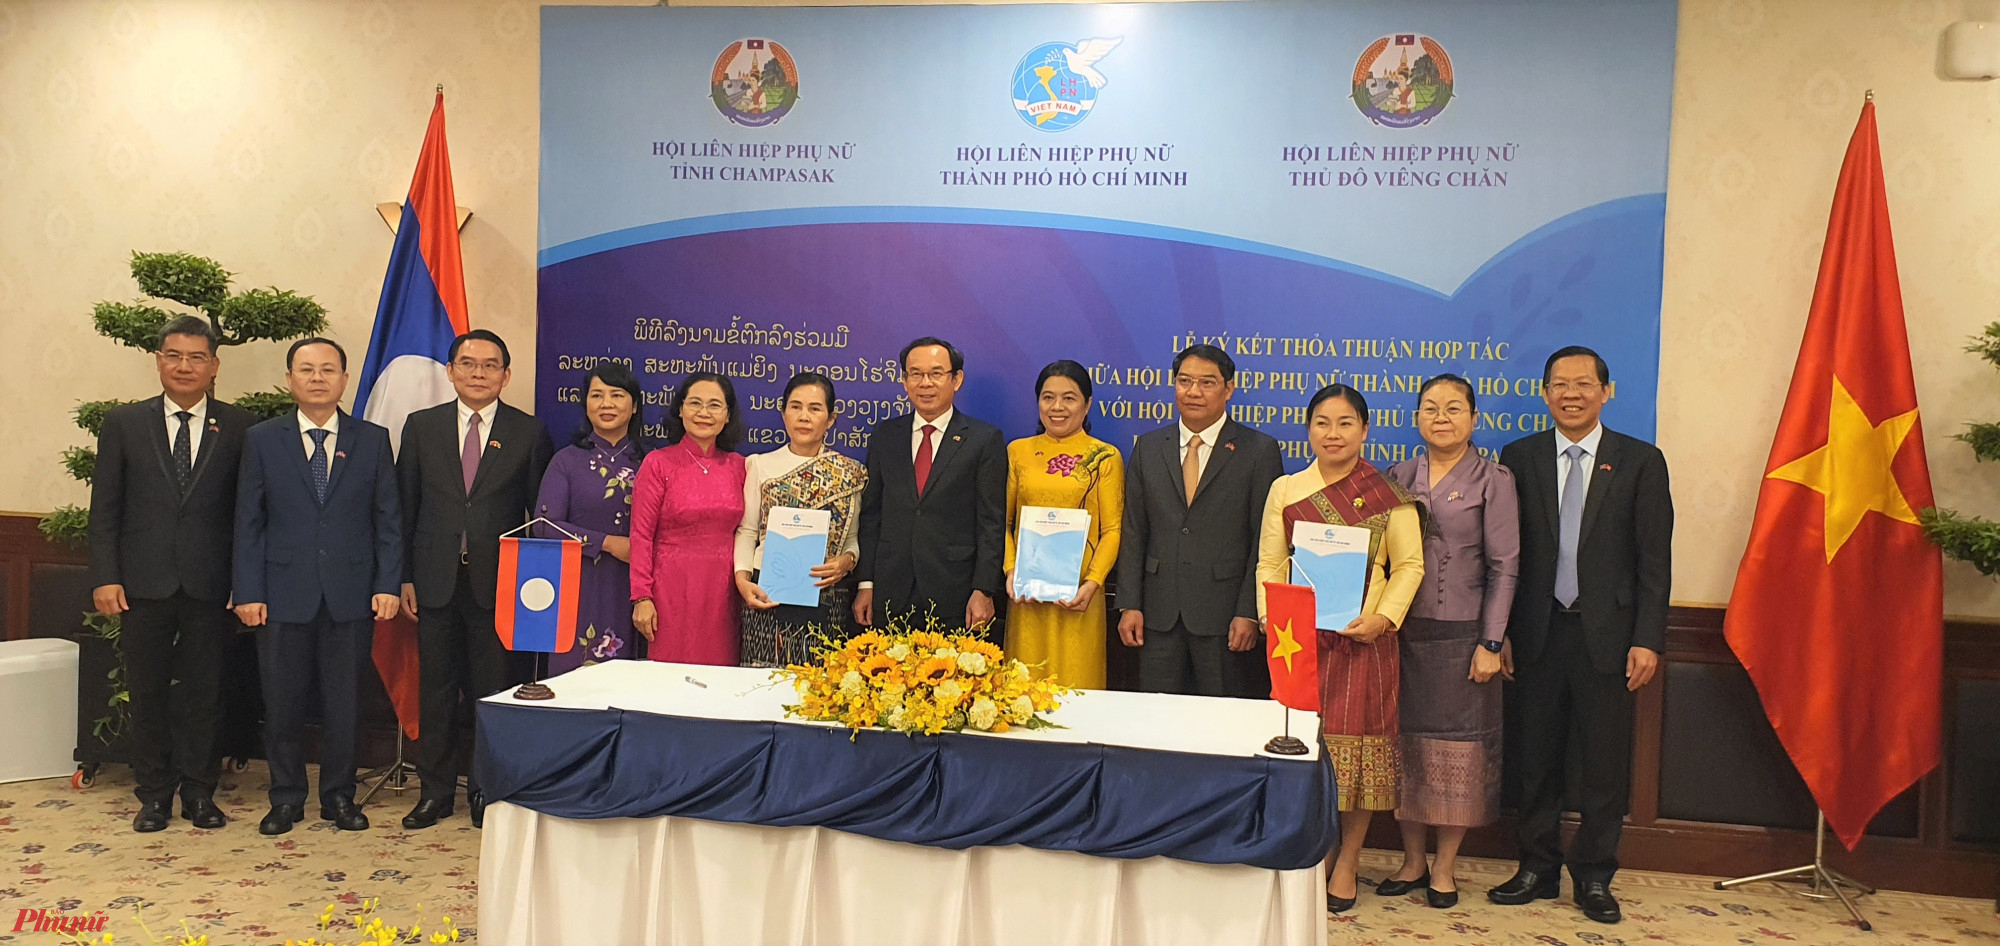 Hội LHPN TPHCM ký kết thỏa thuận hợp tác với Hội LHPN Thủ đô Viêng Chăn; Hội LHPN tỉnh Champasak - Lào, giai đoạn 2022 - 2026